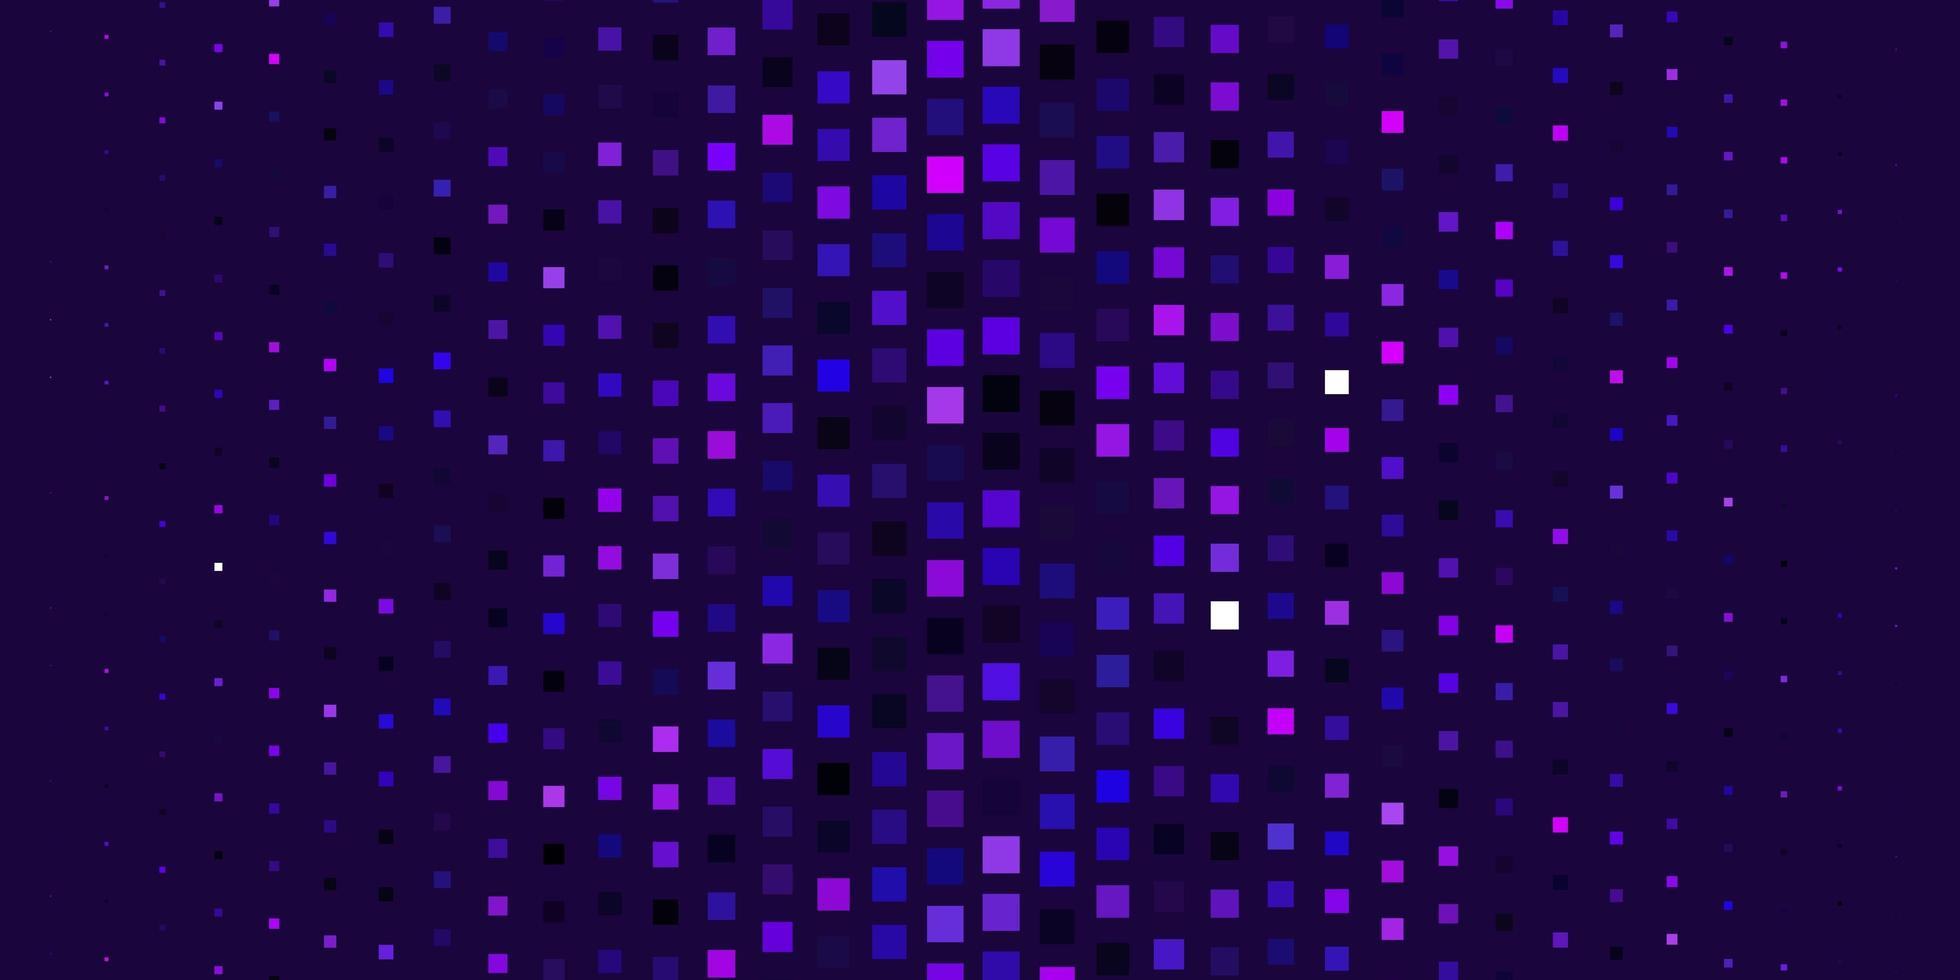 Plantilla de vector de color púrpura claro en la ilustración de rectángulos con un conjunto de rectángulos degradados, el mejor diseño para su banner de cartel publicitario